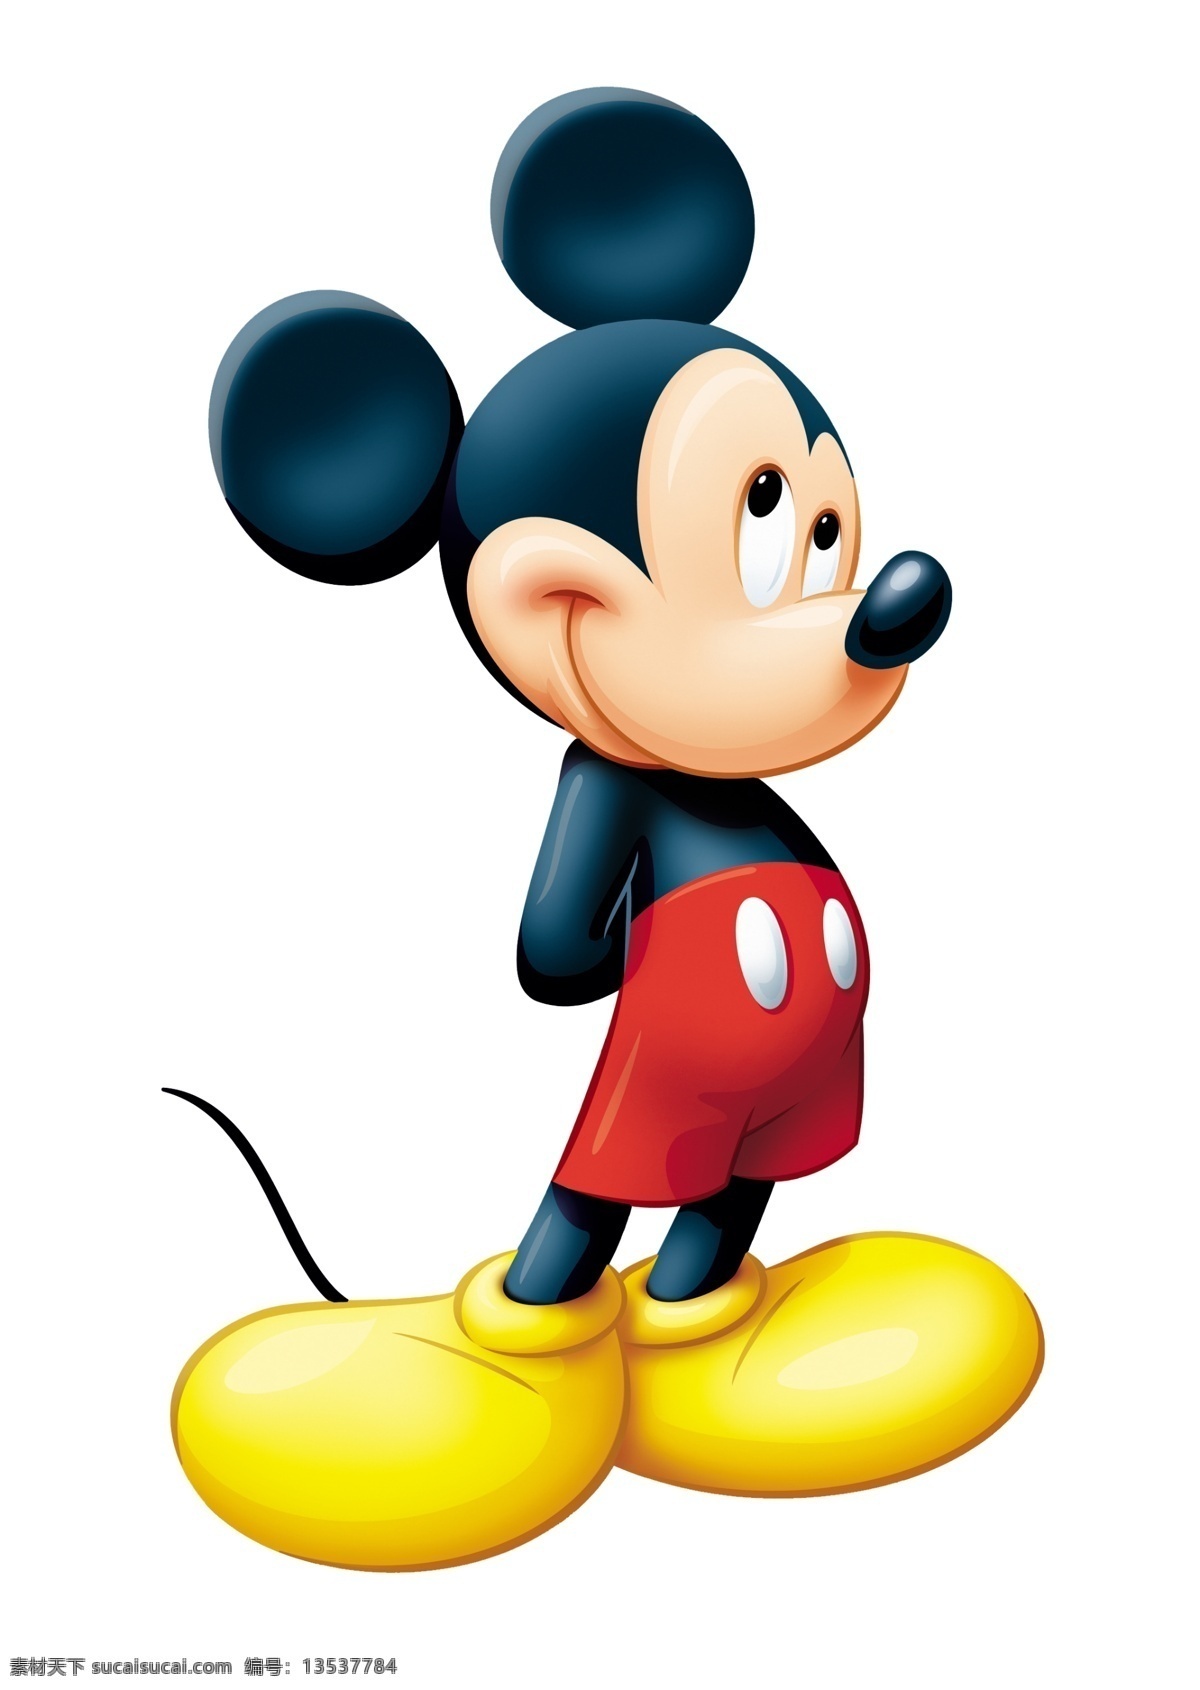 超 清晰 米奇 老鼠 米奇老鼠 迪士尼 卡通 漫画 psd素材 源文件库